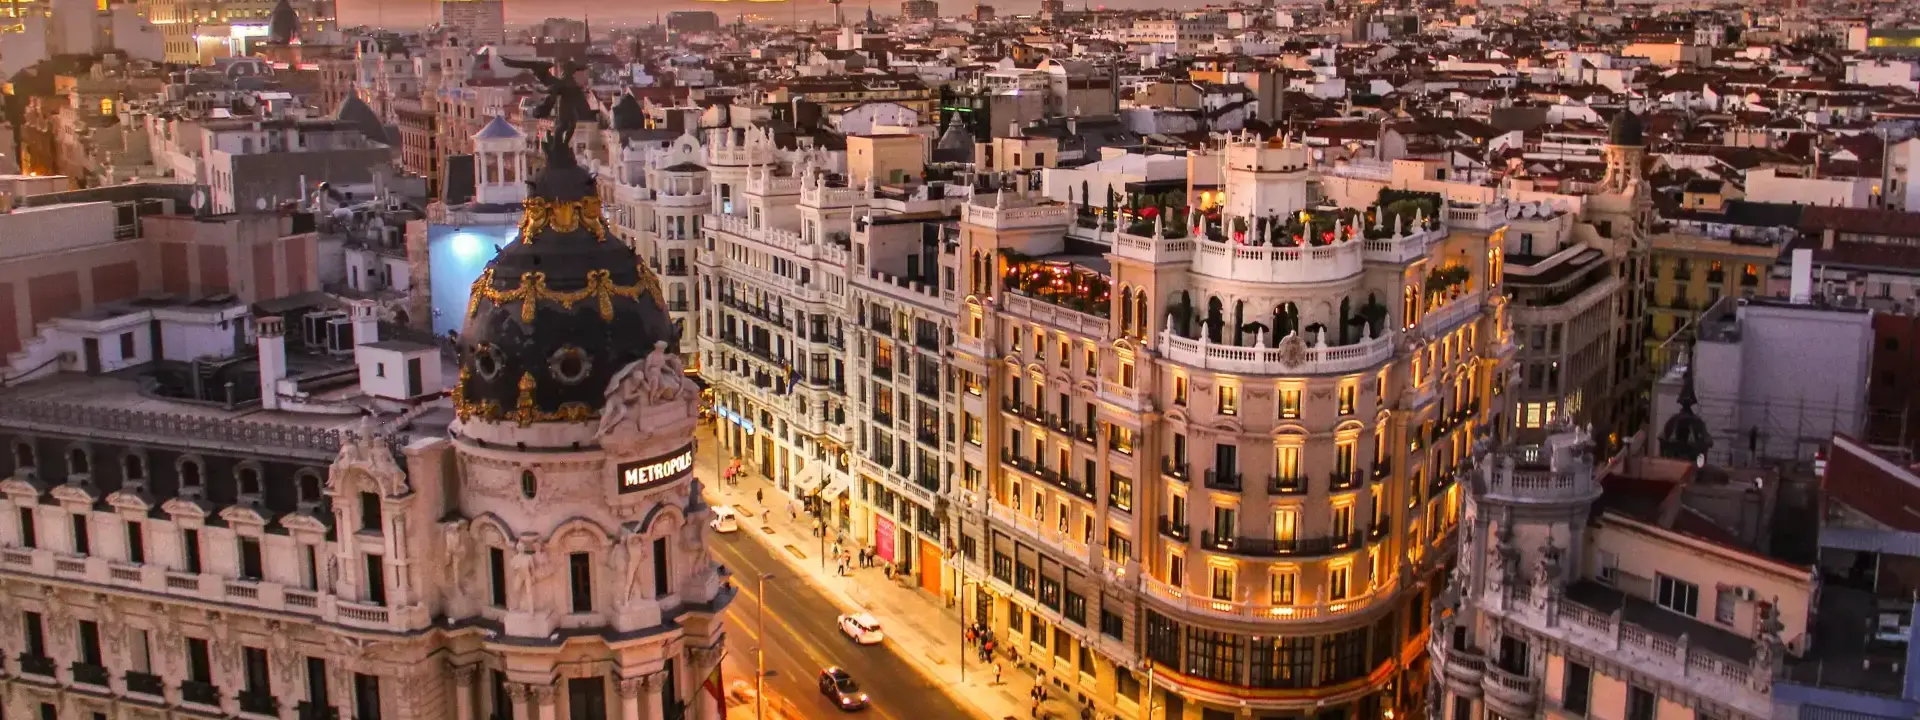 Madrid Region Spain